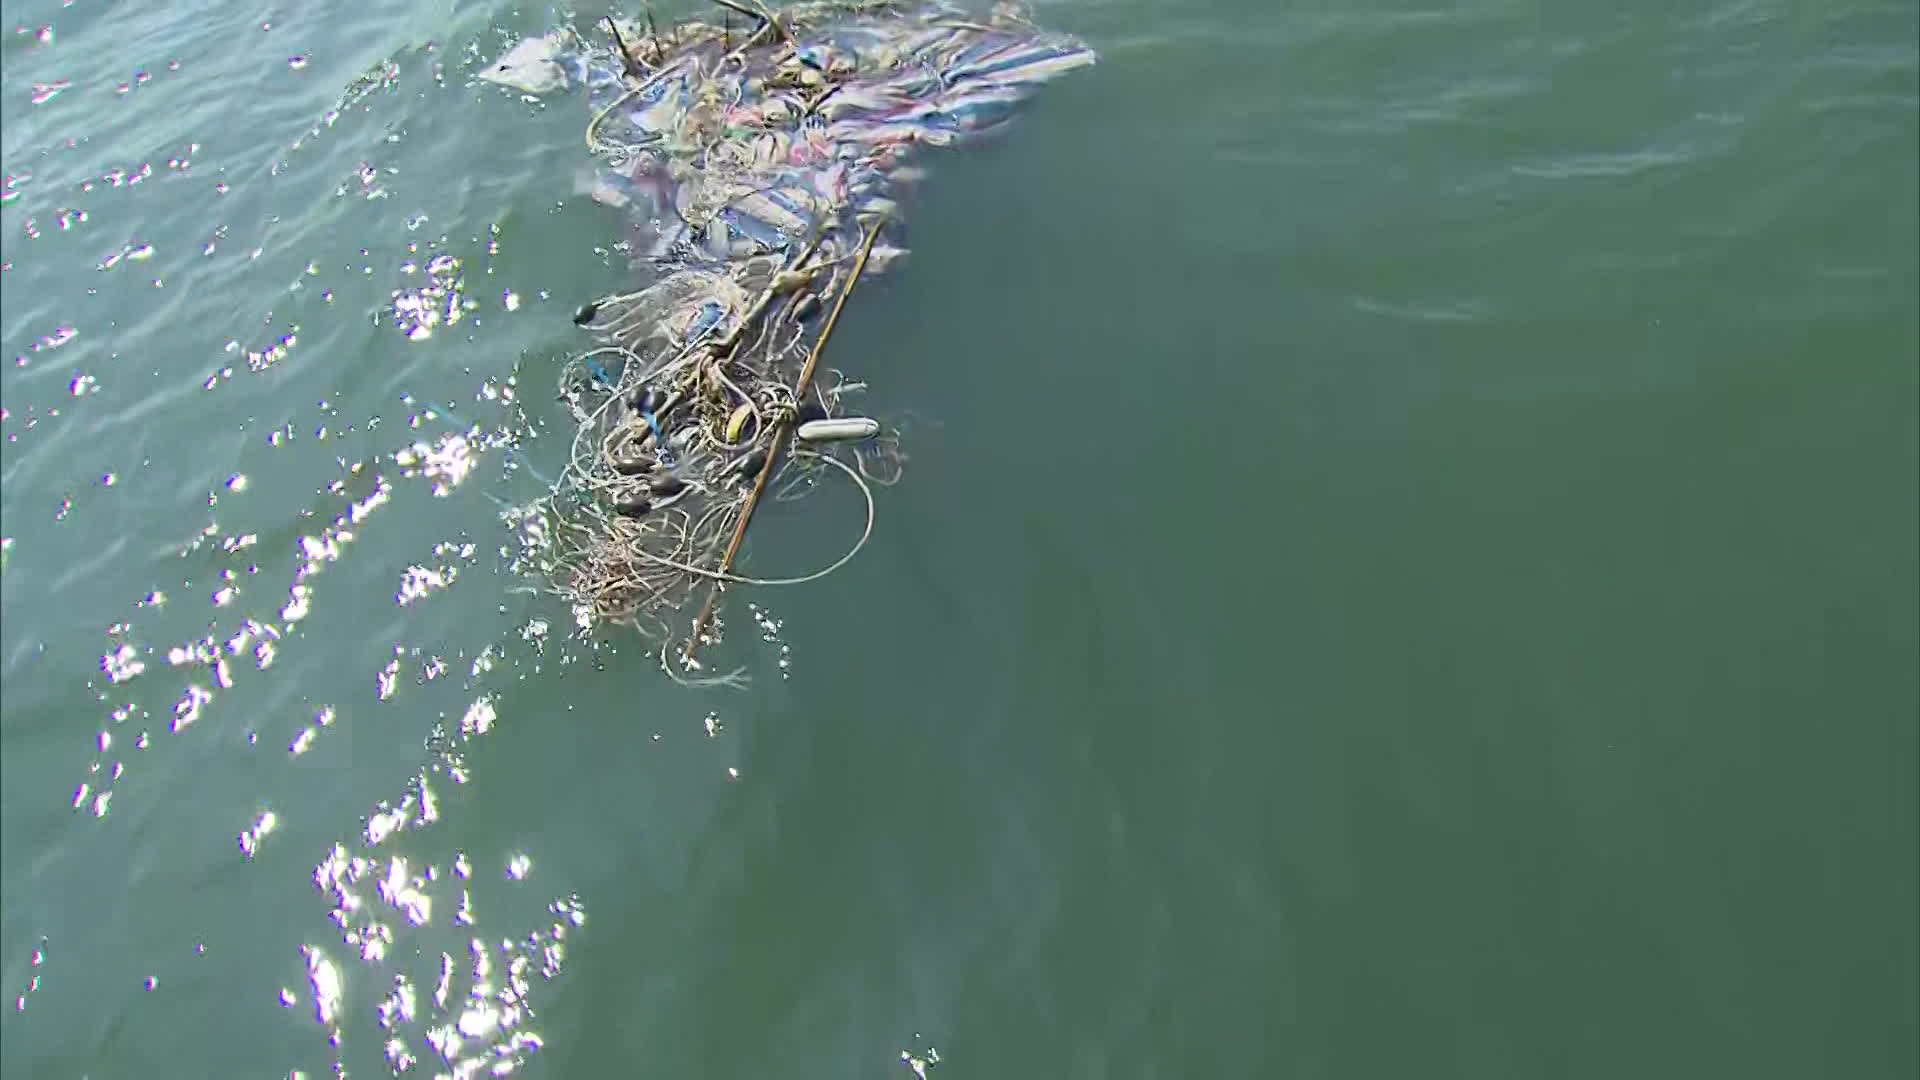 폐어구와 천막, 나무 등이 엉켜 있는 해양쓰레기